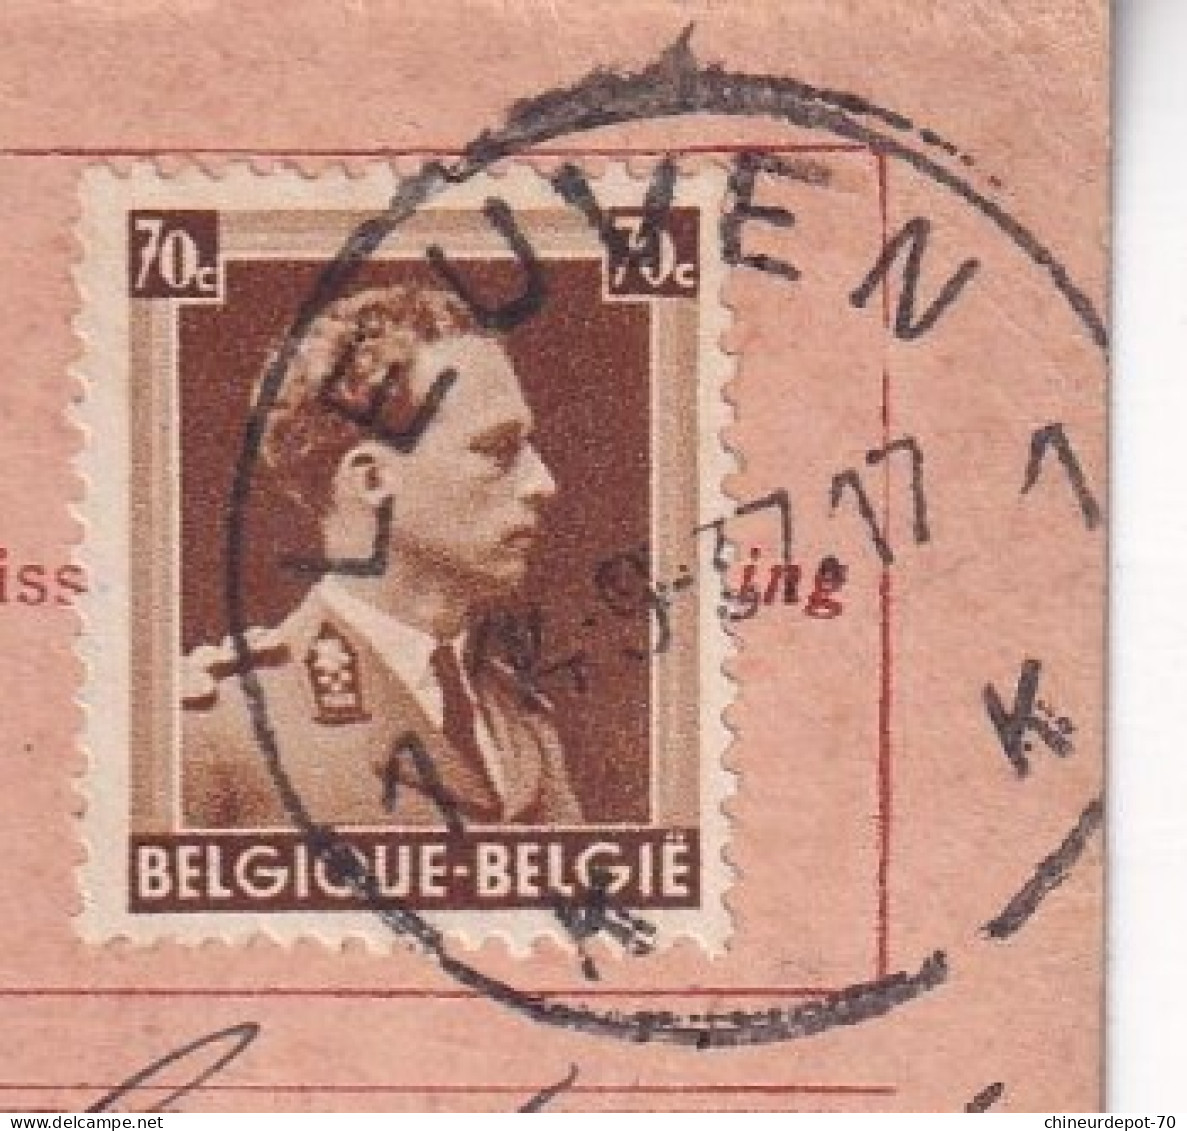 Fiscaux Théophhile Smets Louvain Leuven 1937 1K - Documents